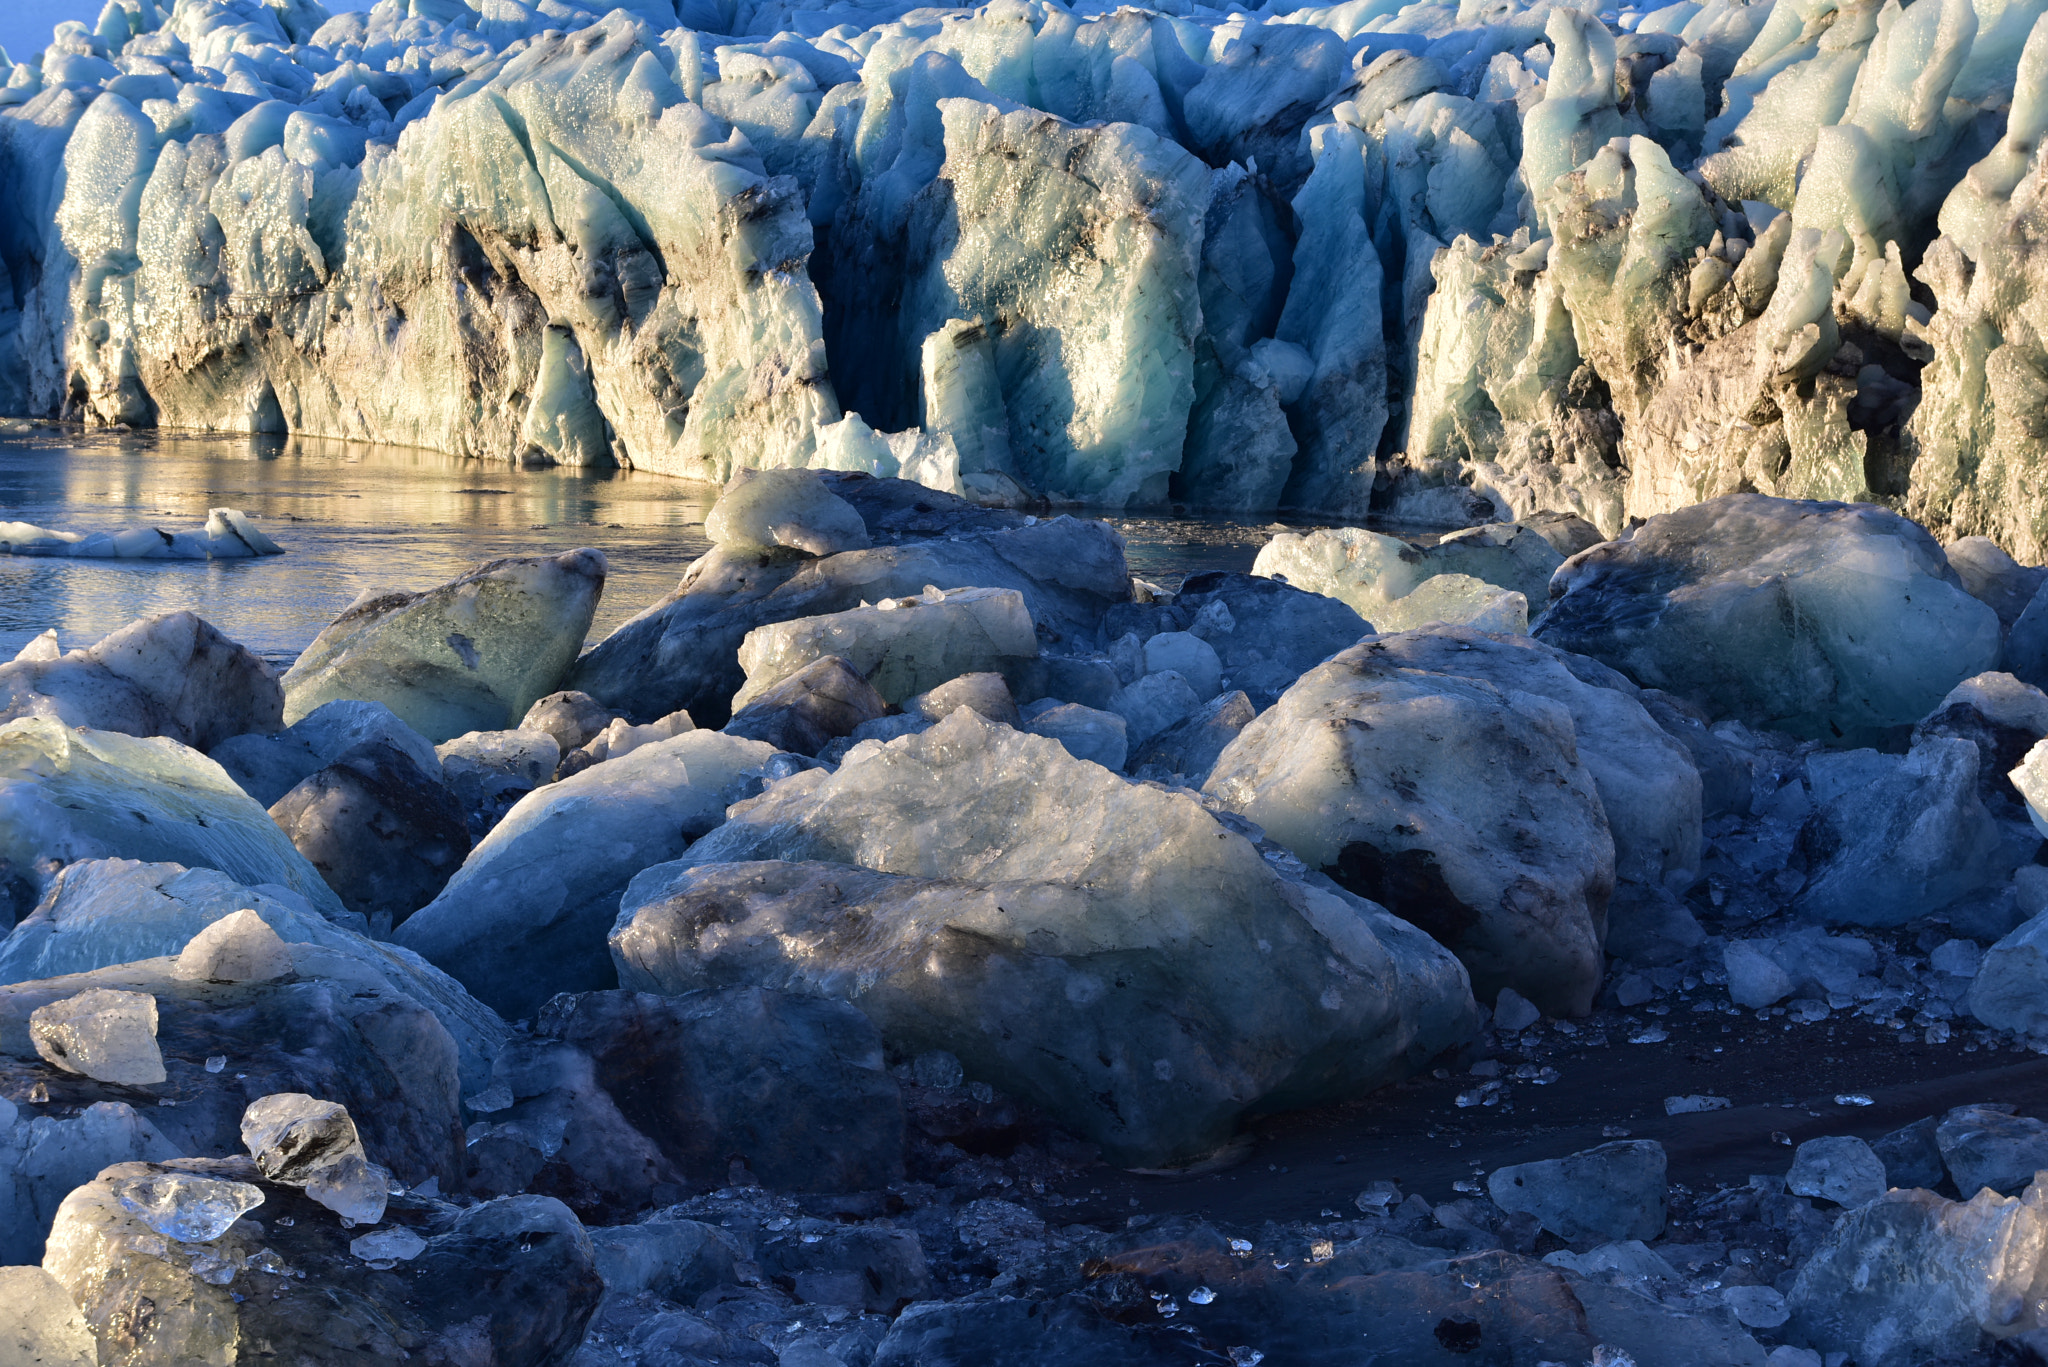 Nikon D810 + AF Zoom-Nikkor 28-100mm f/3.5-5.6G sample photo. Breiðamerkurjökull glacier photography